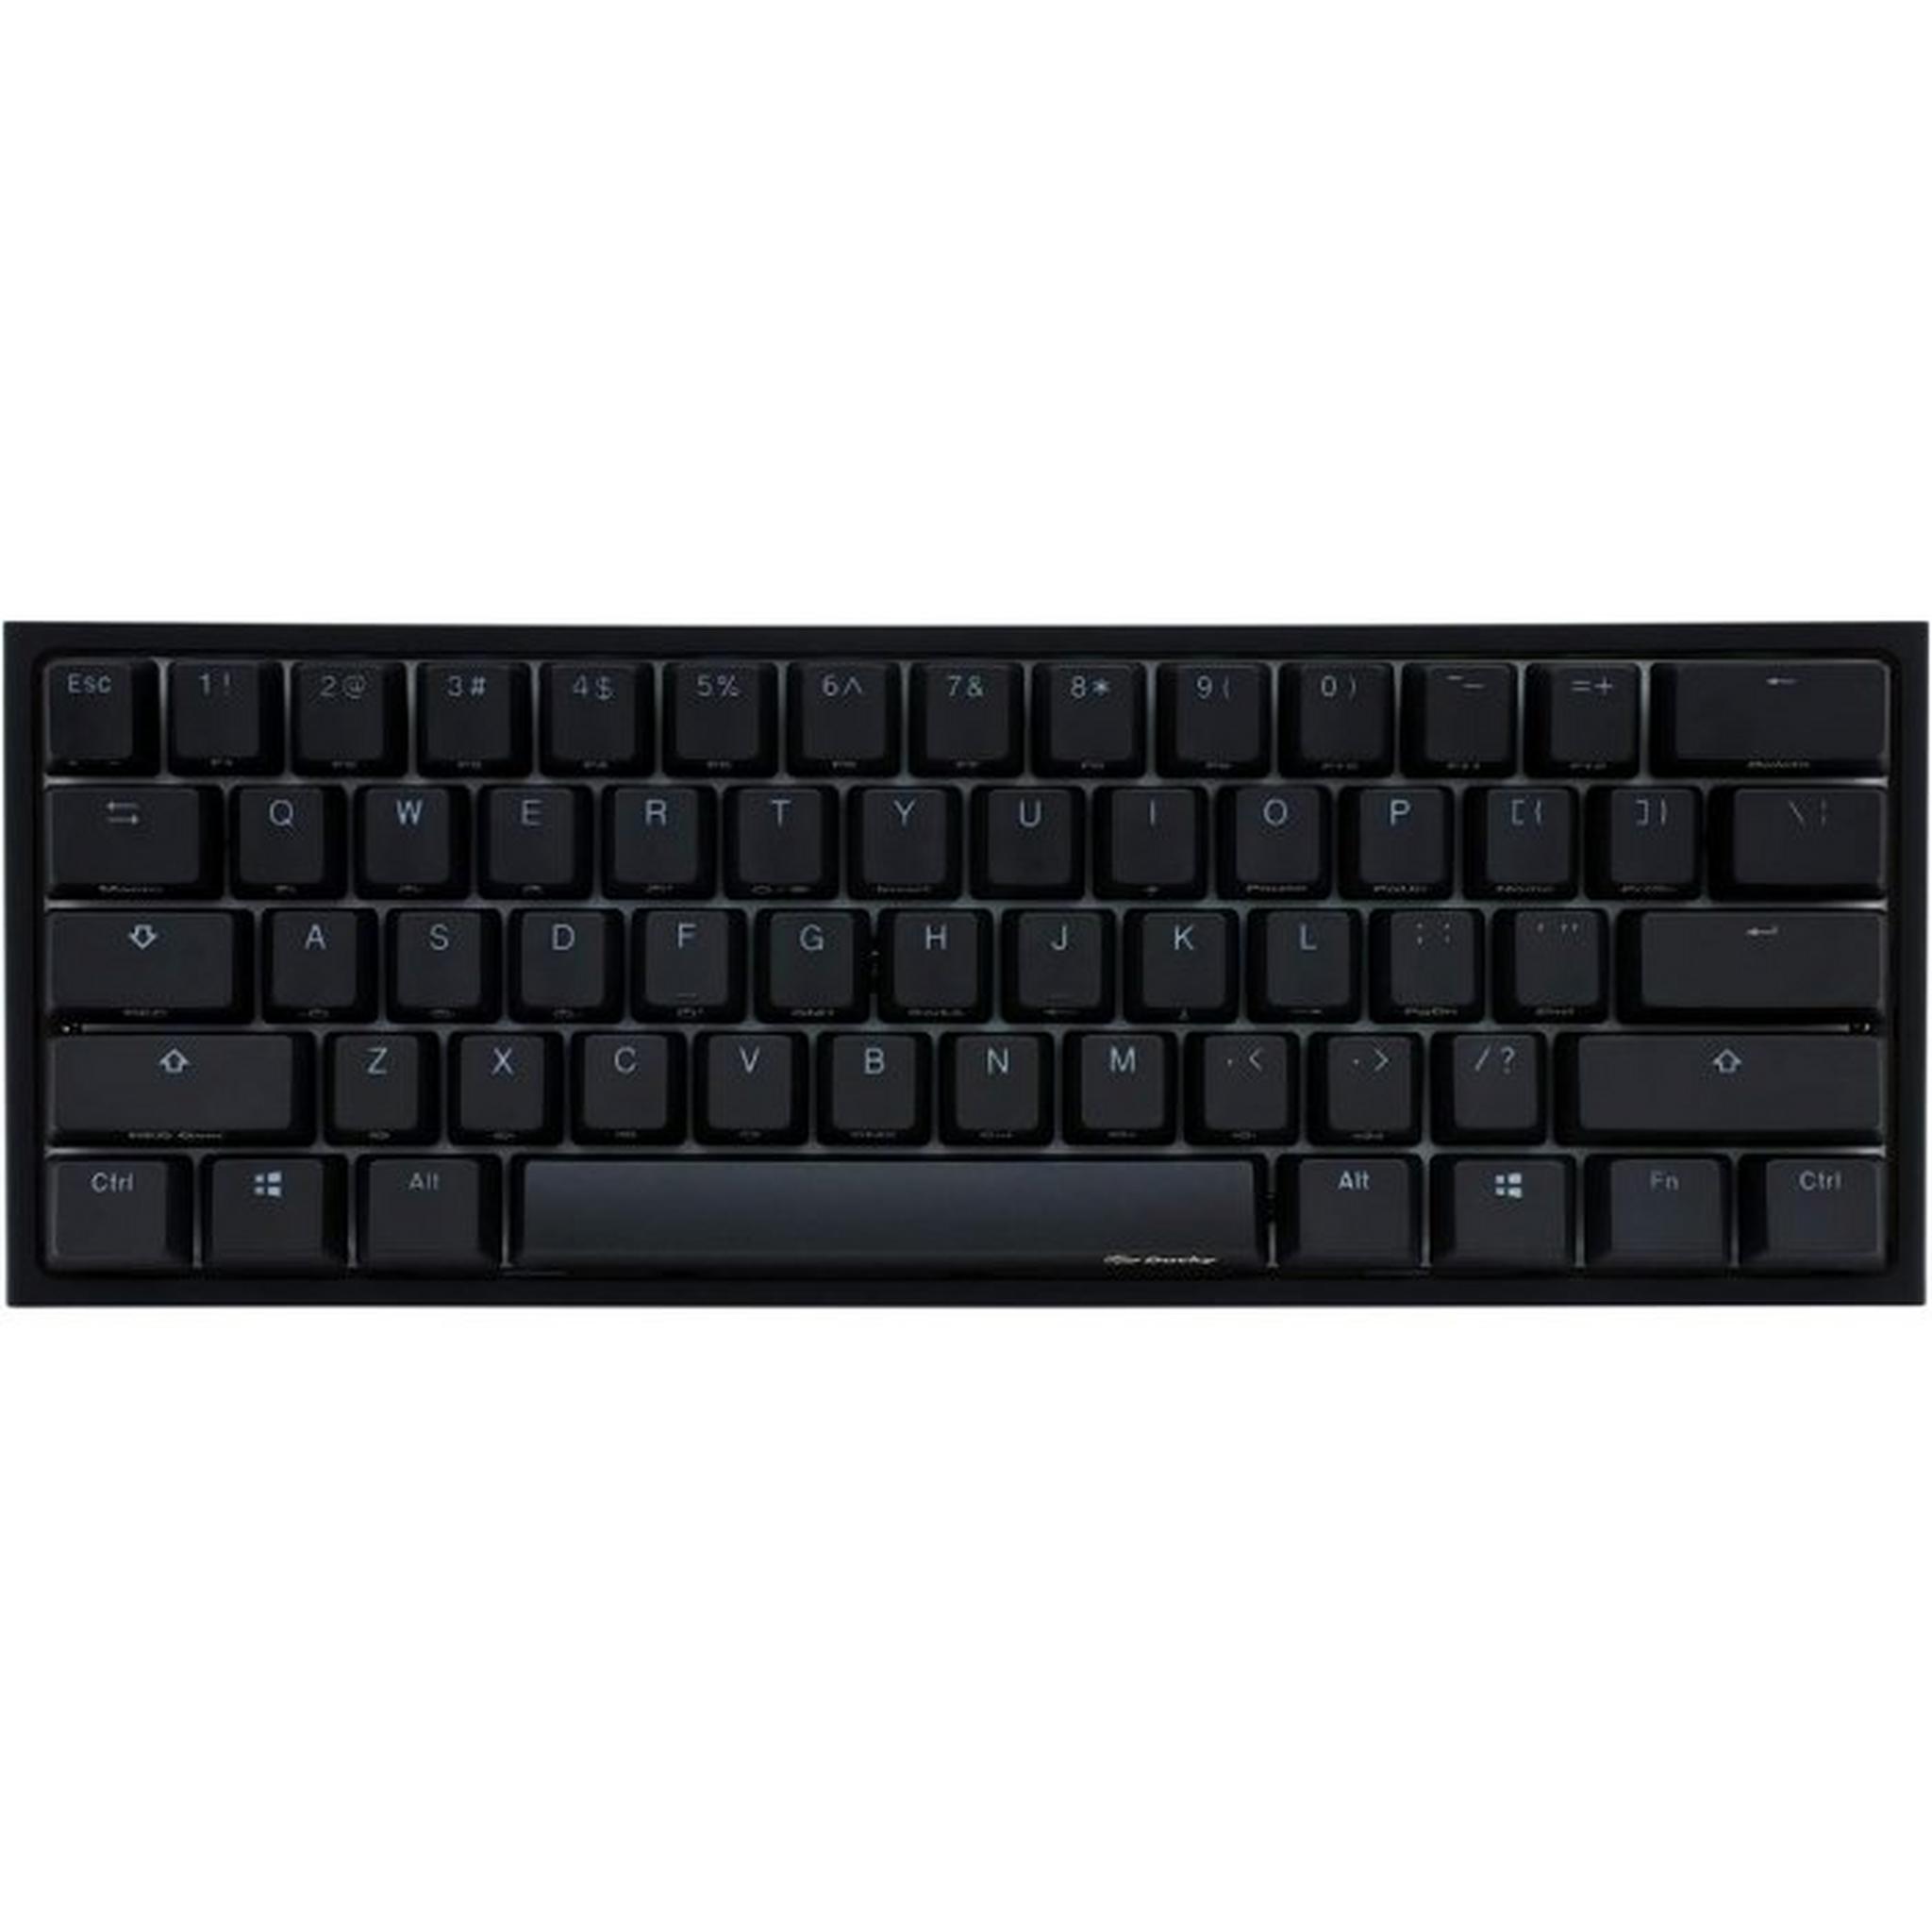 لوحة مفاتيح الألعاب ون 2 برو ميني السلكية الميكانيكية ار جي بي من دوكي, DKON2061ST - أسود